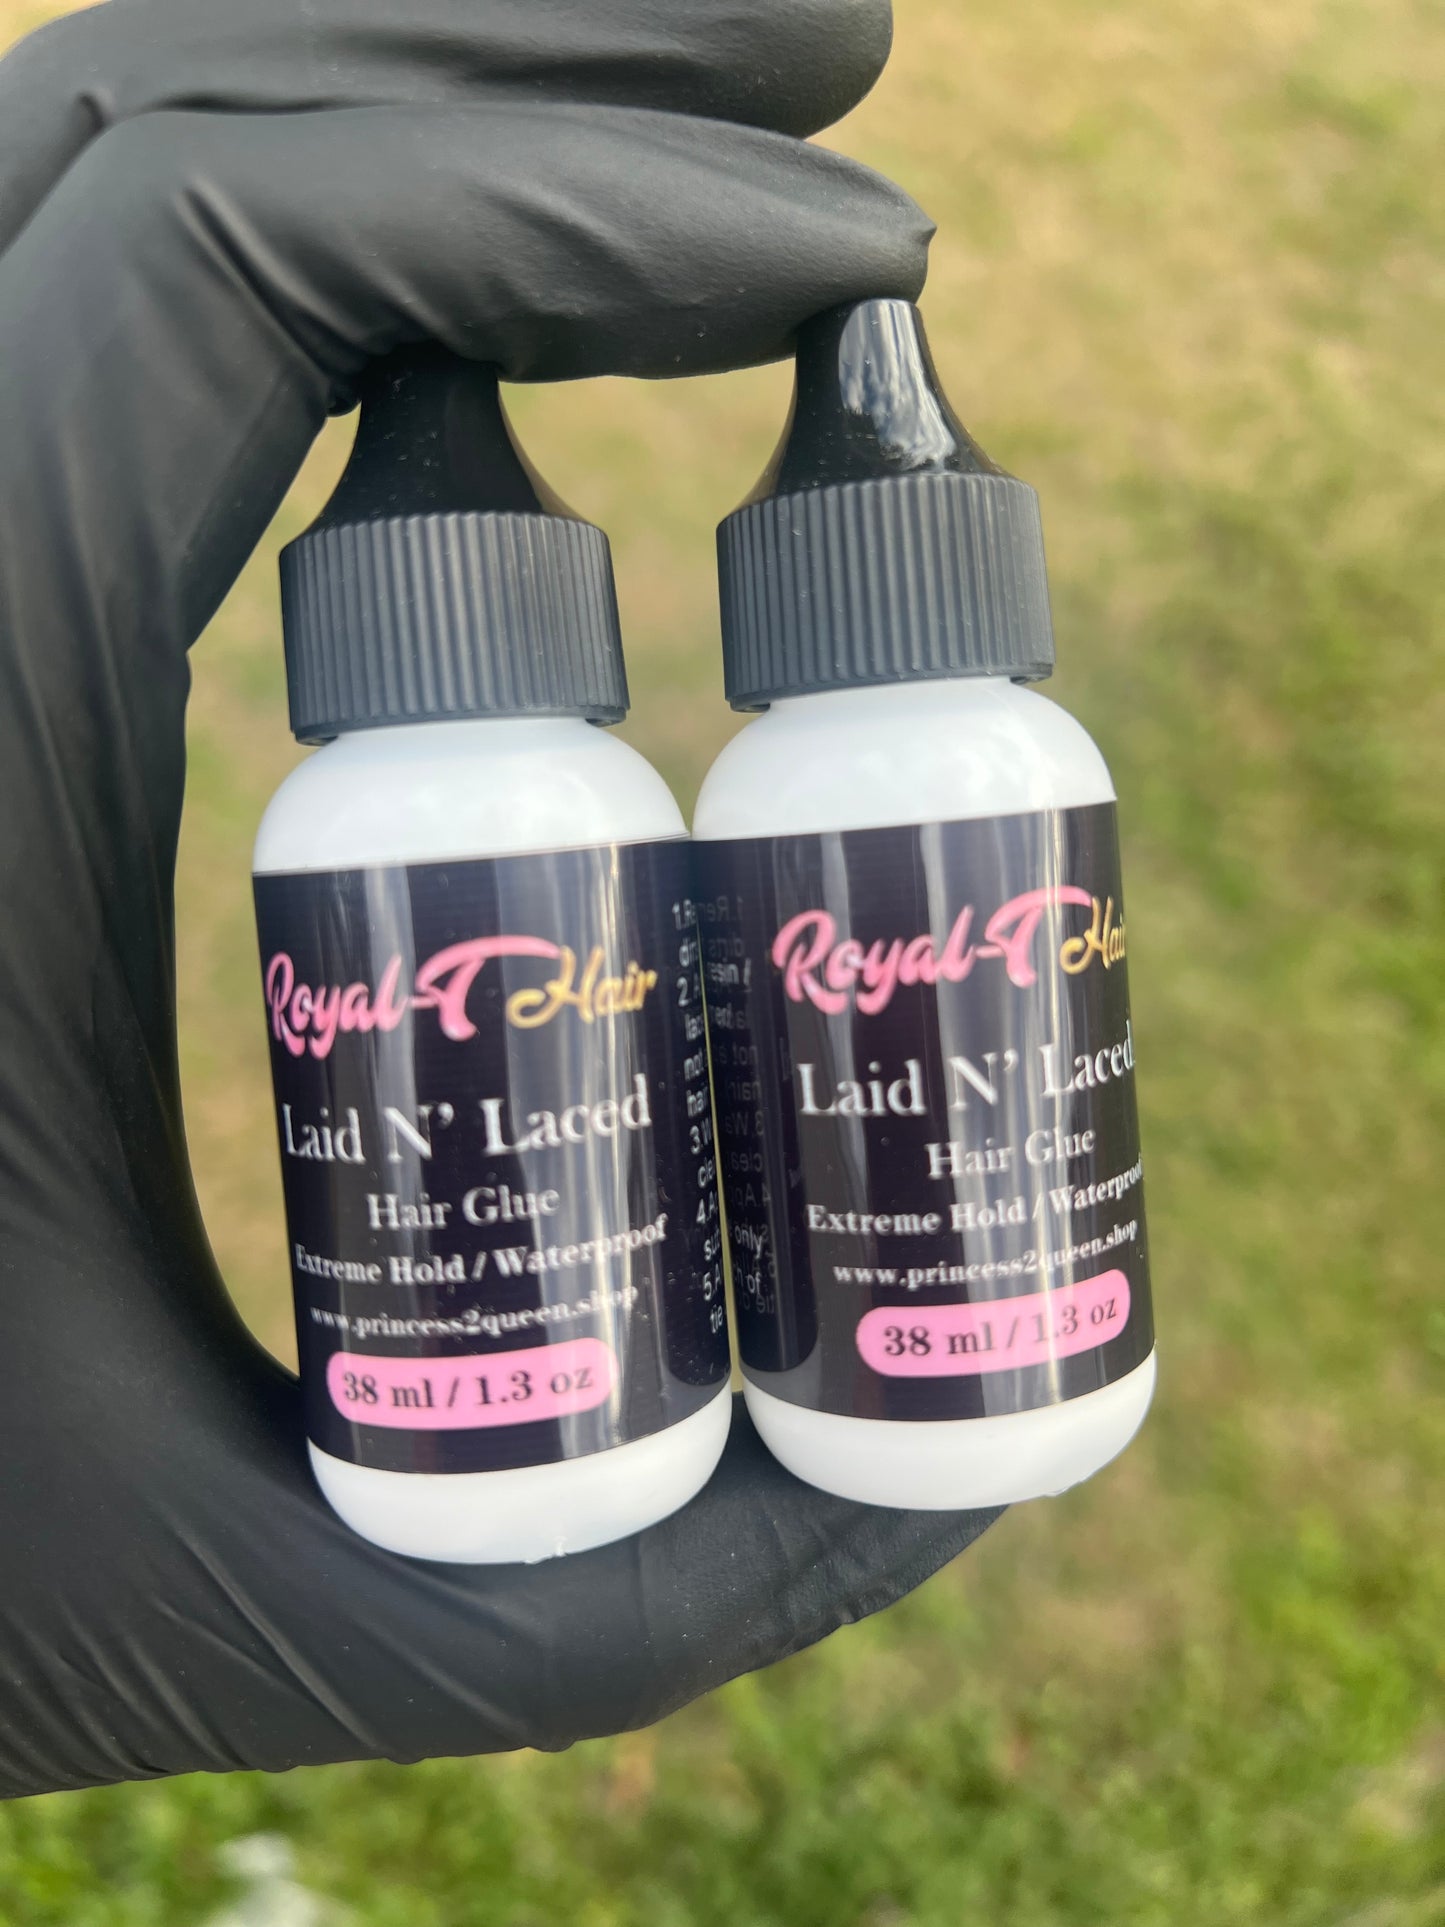 Laid N’ Laced Hair Glue